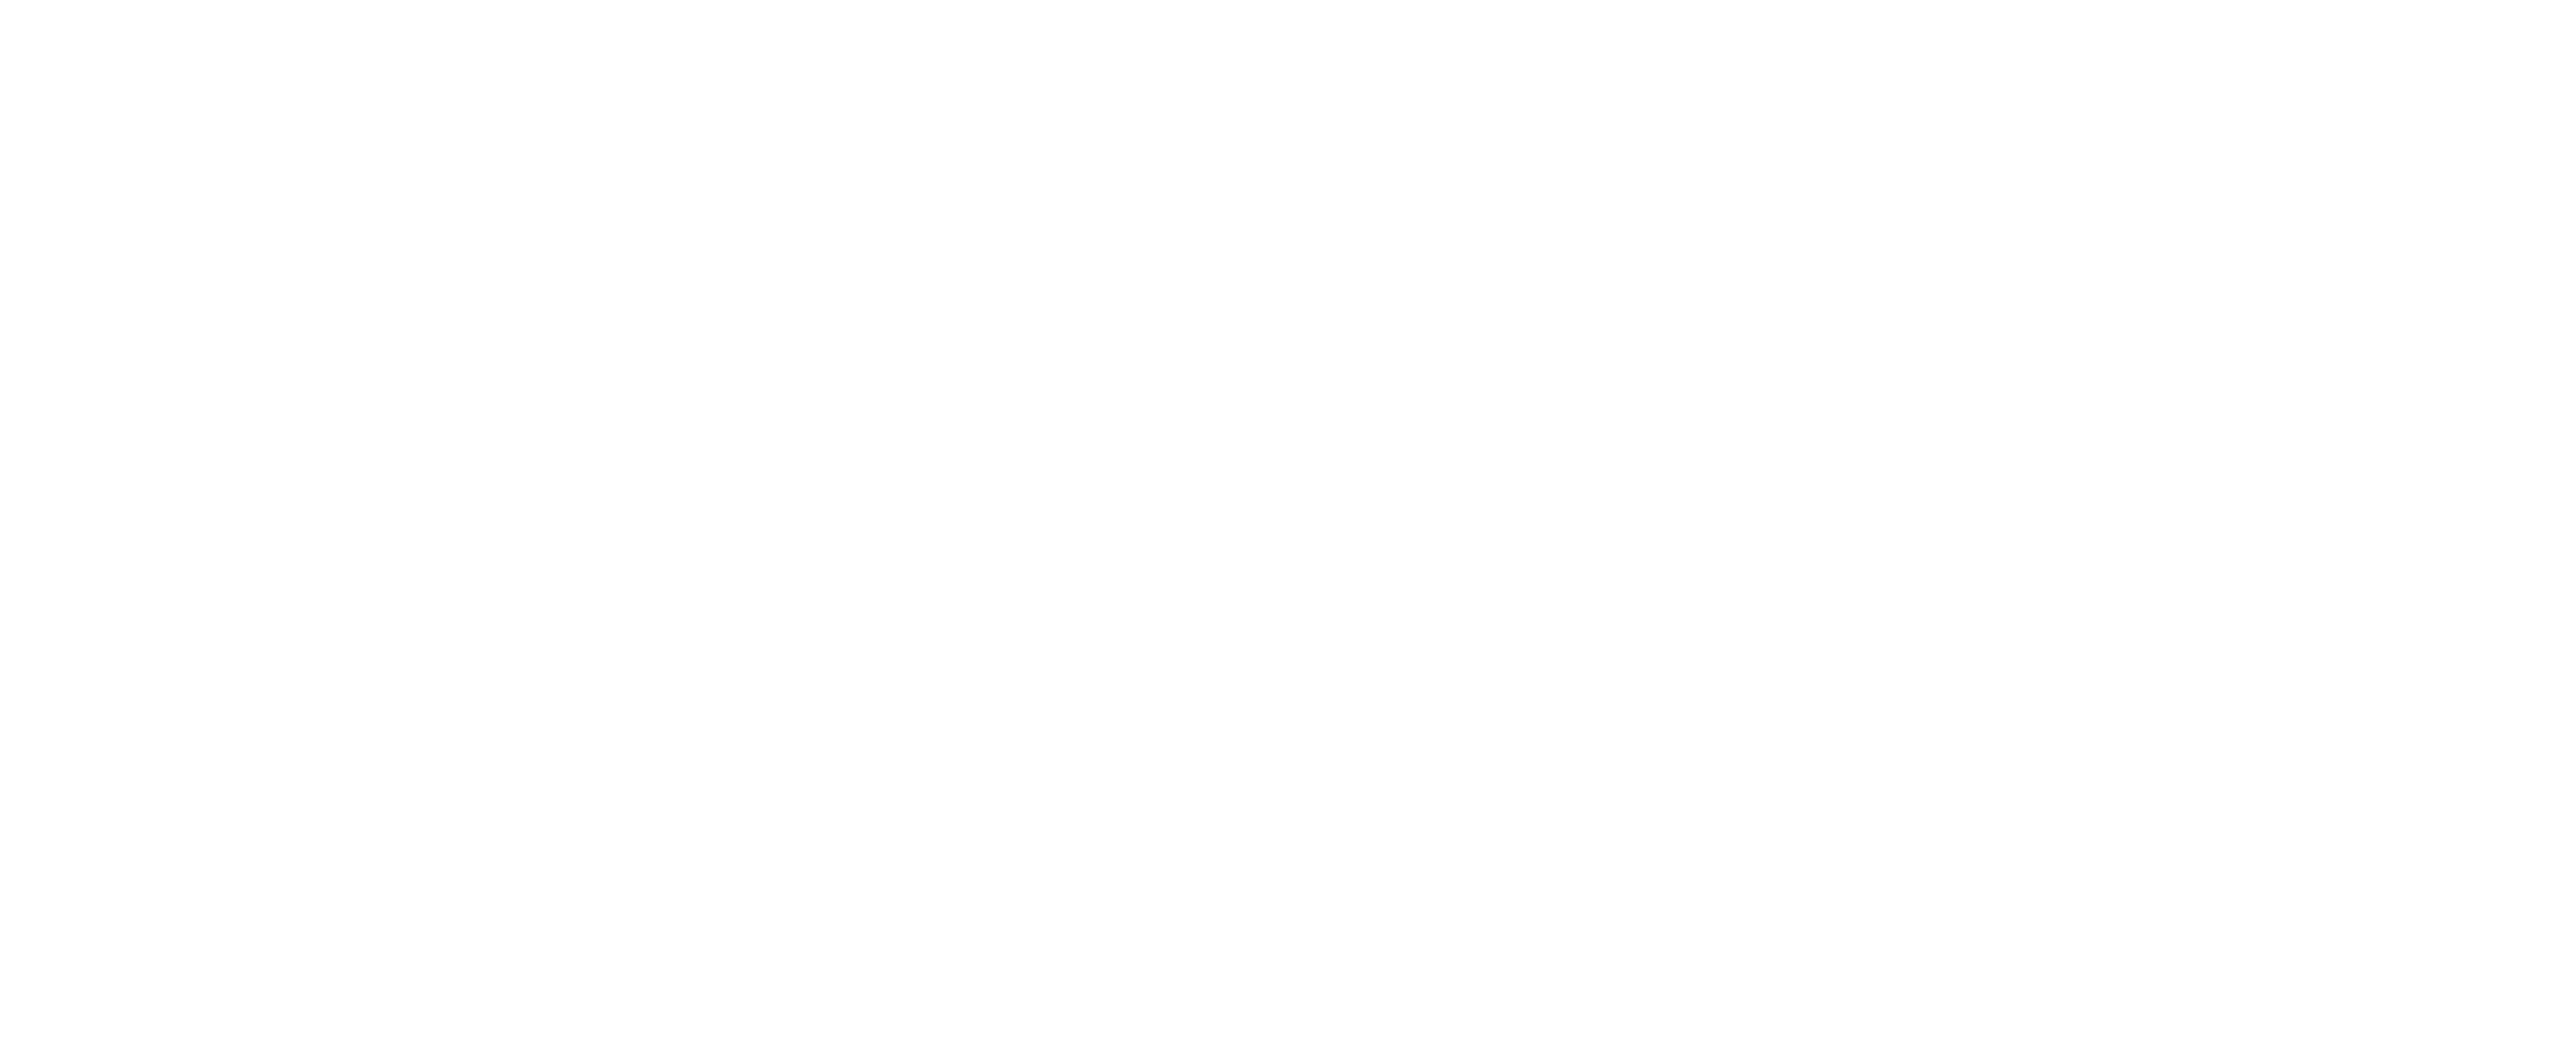 A Christmas Mystery logo